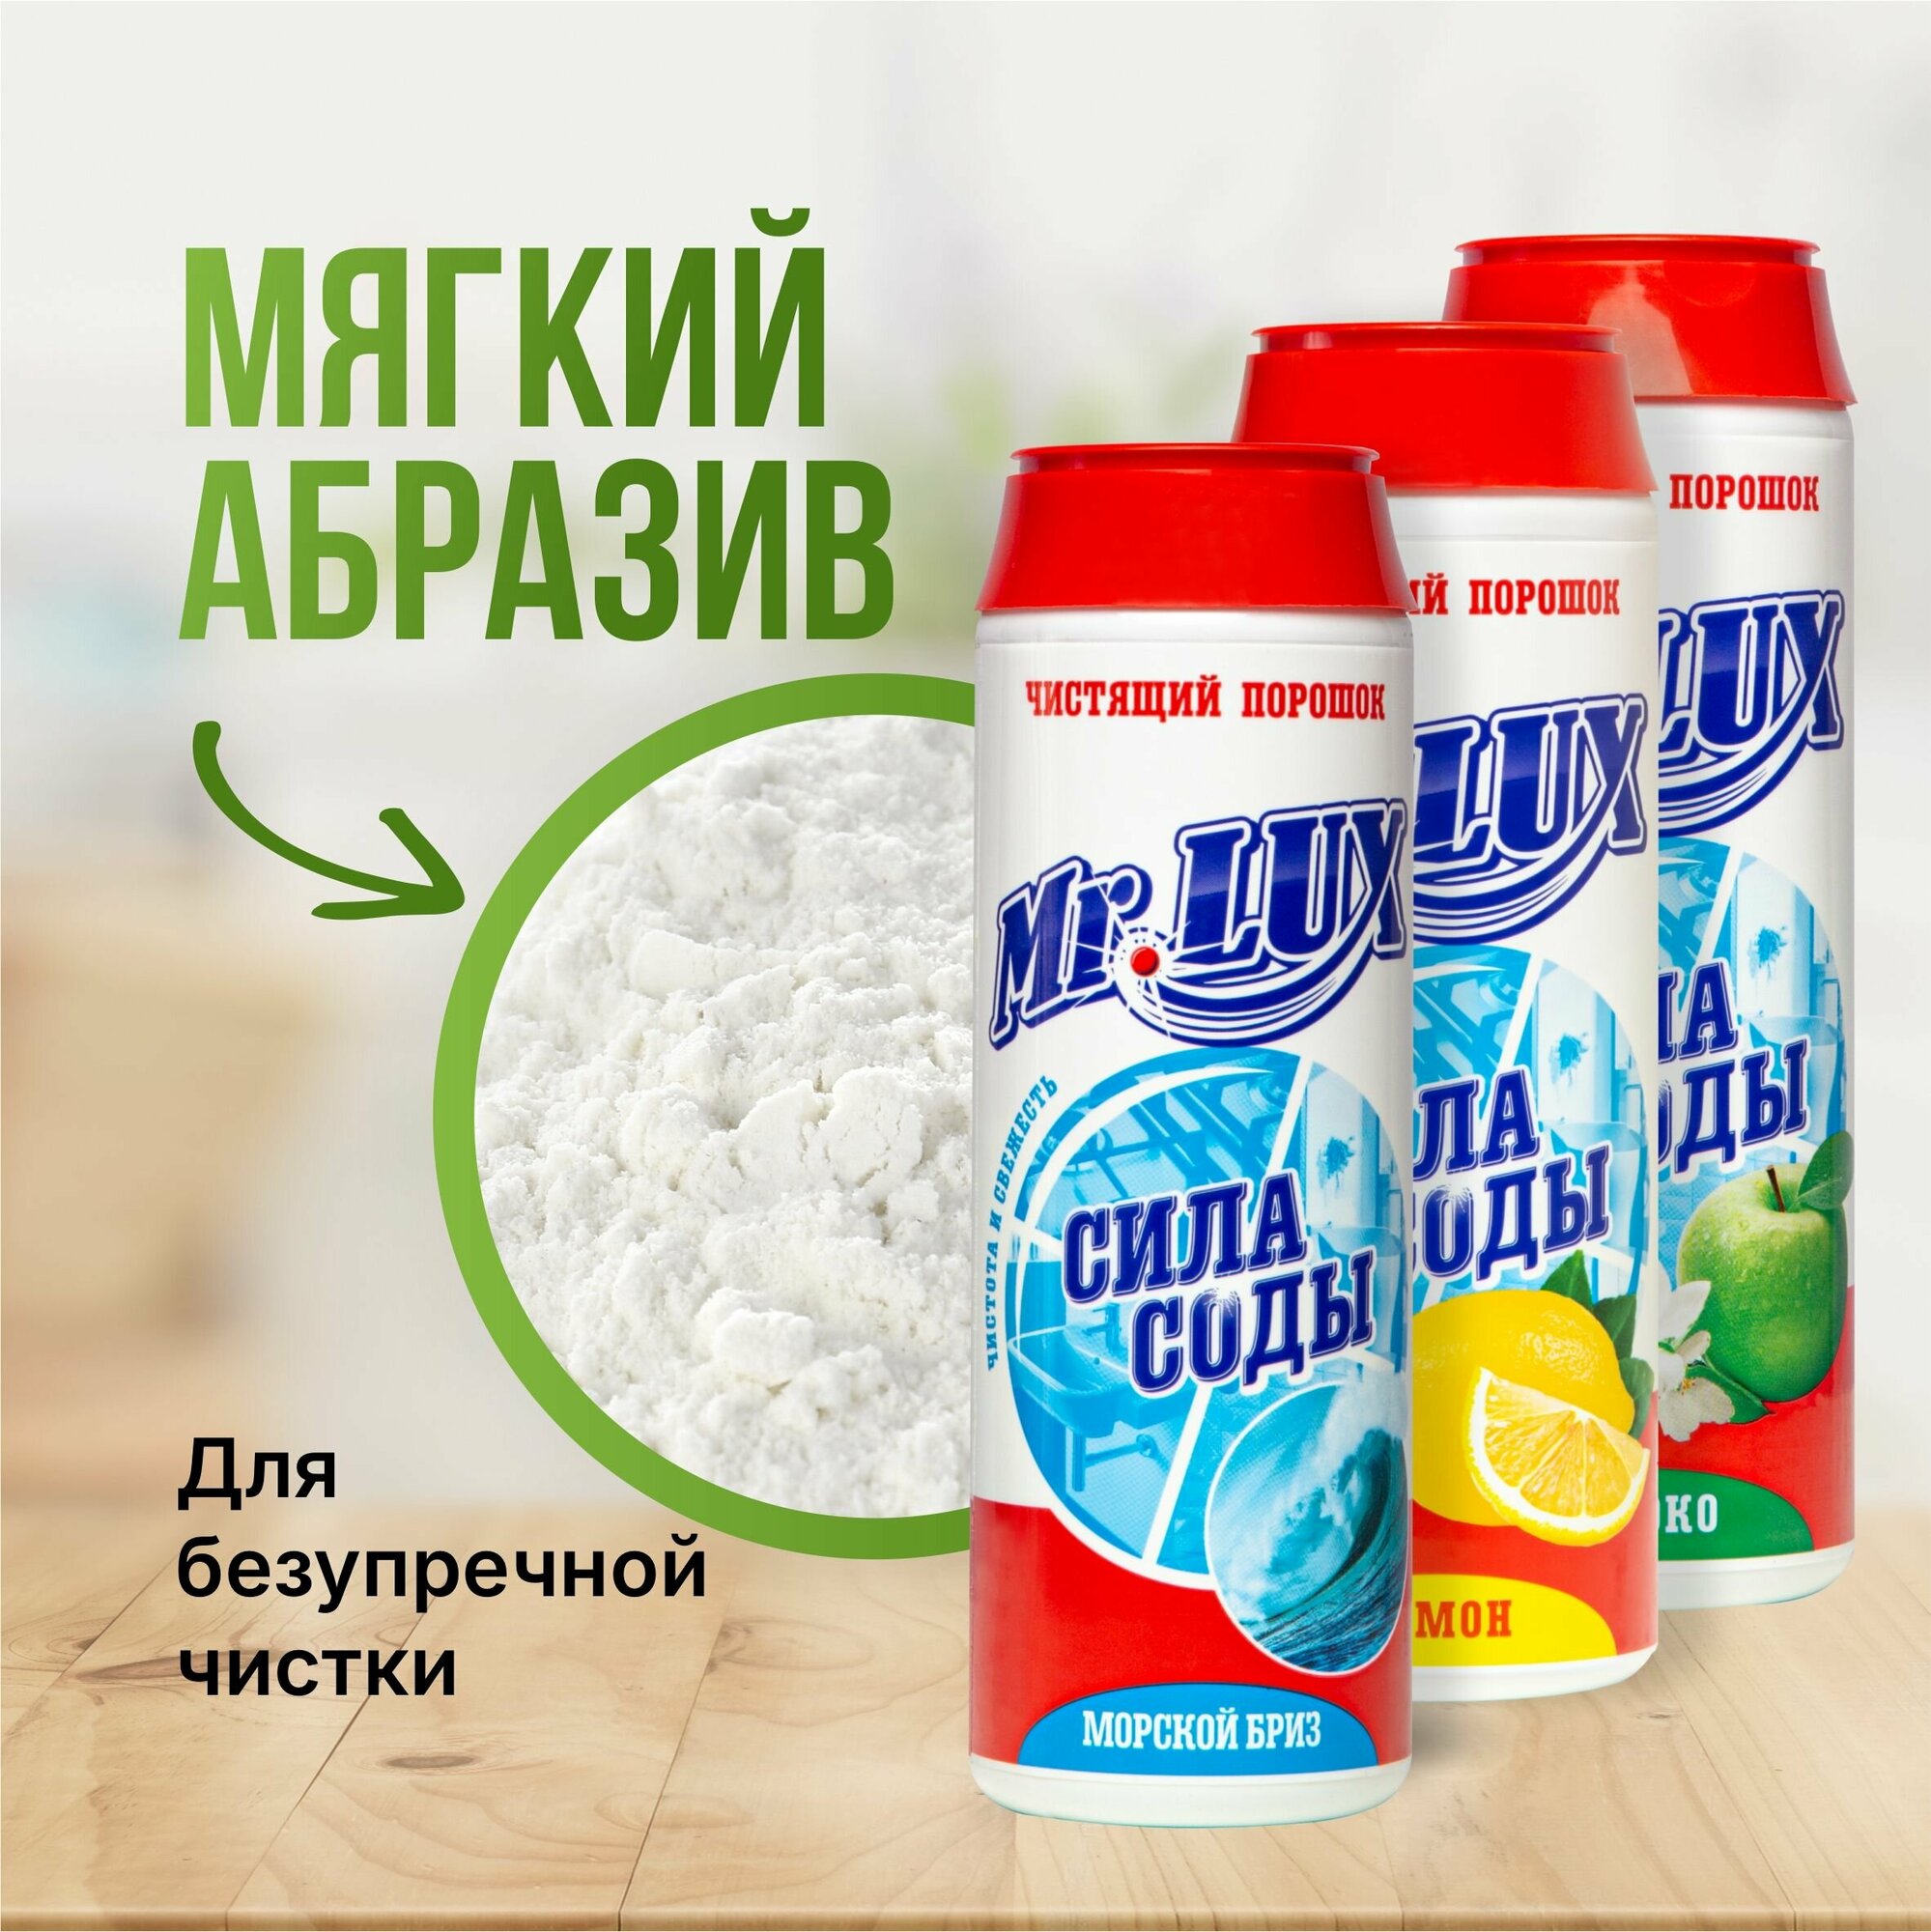 Чистящий порошок Mr.LUX, универсальное чистящее средство для дома и кухни микс ароматов, набор 3 шт.